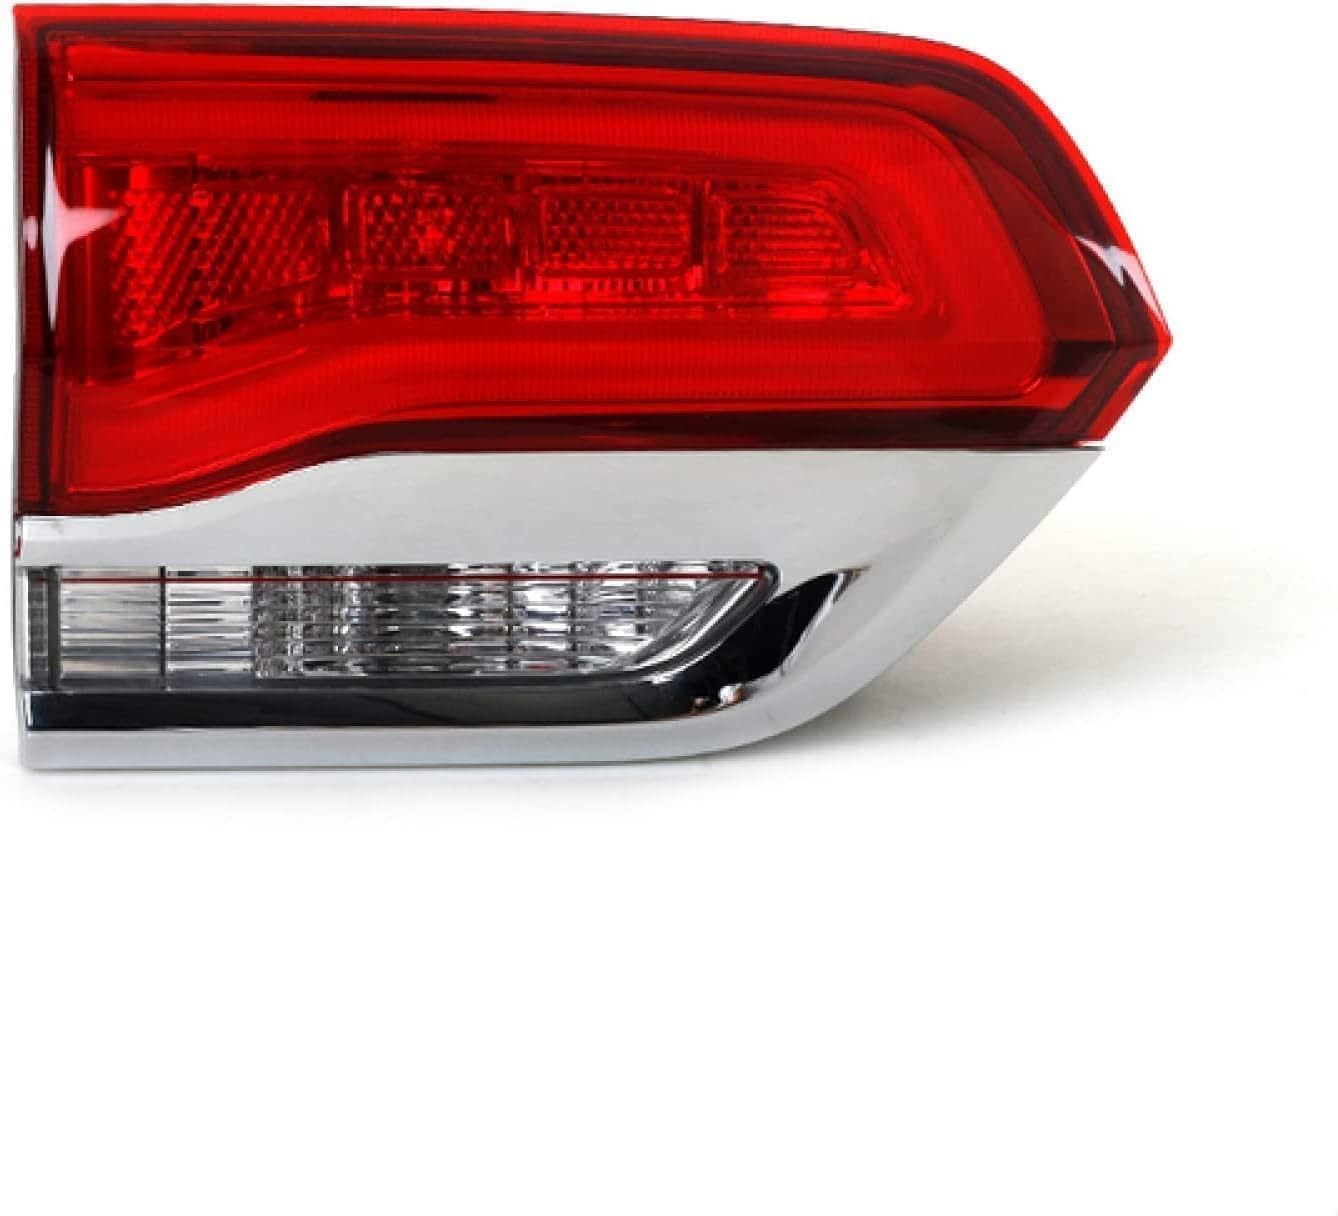 IWAGH Auto Rückleuchten für Jeep Grand Cherokee 2014-2016,Multifunktion Heckleuchten Leuchten Blinklicht Wasserdicht Rücklicht,A/Inside-left von IWAGH